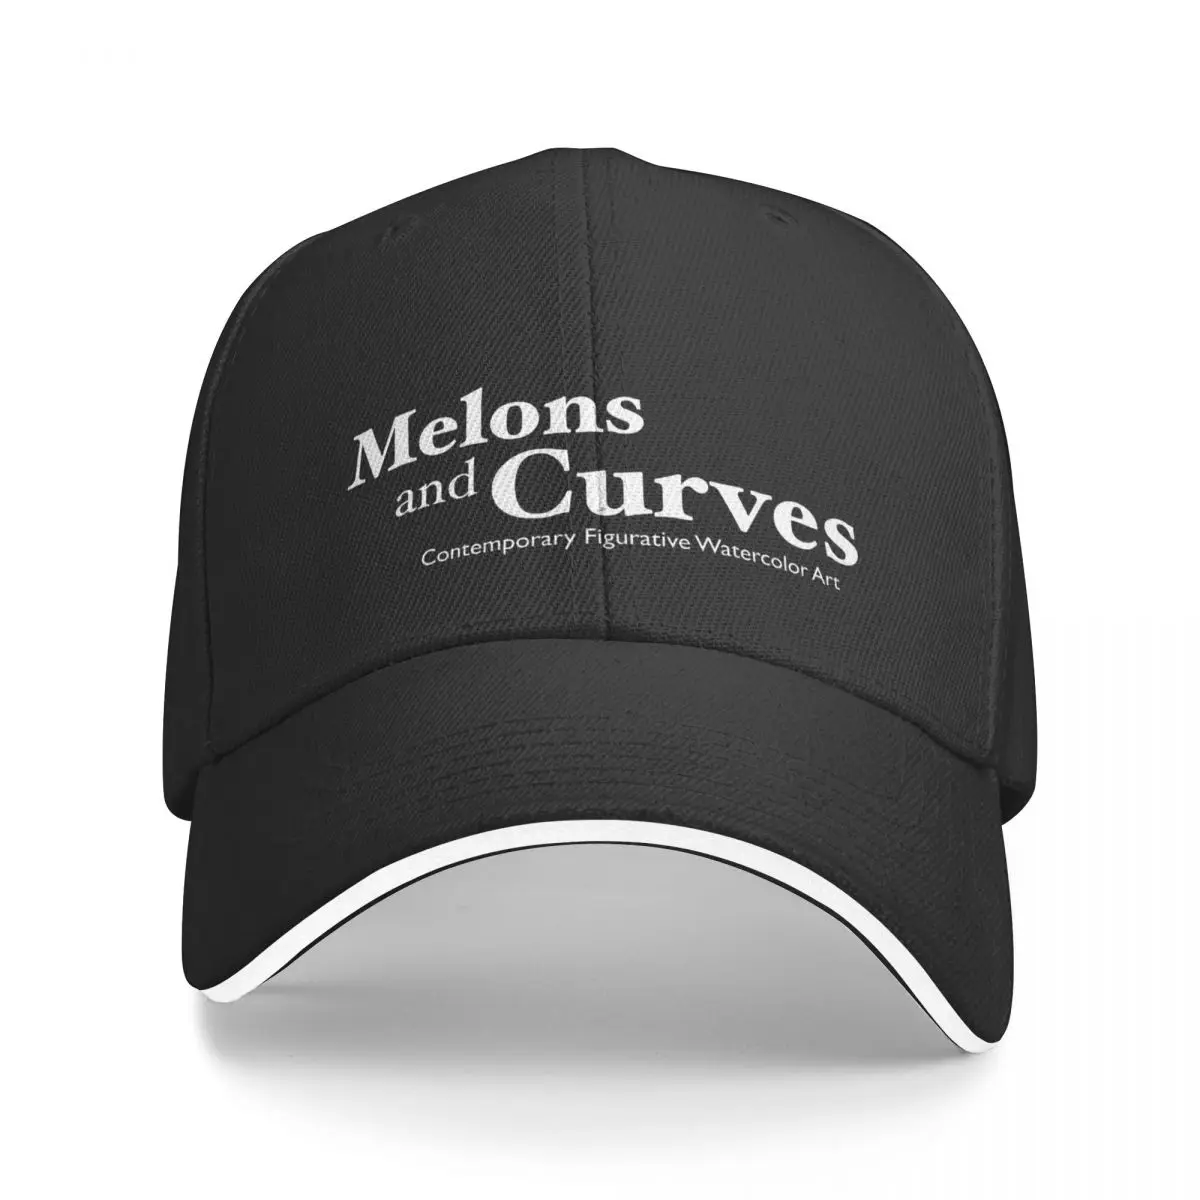 

Бейсболка с логотипом бренда Melons and Curve, головной убор для косплея, бейсболка, кепки для мужчин и женщин